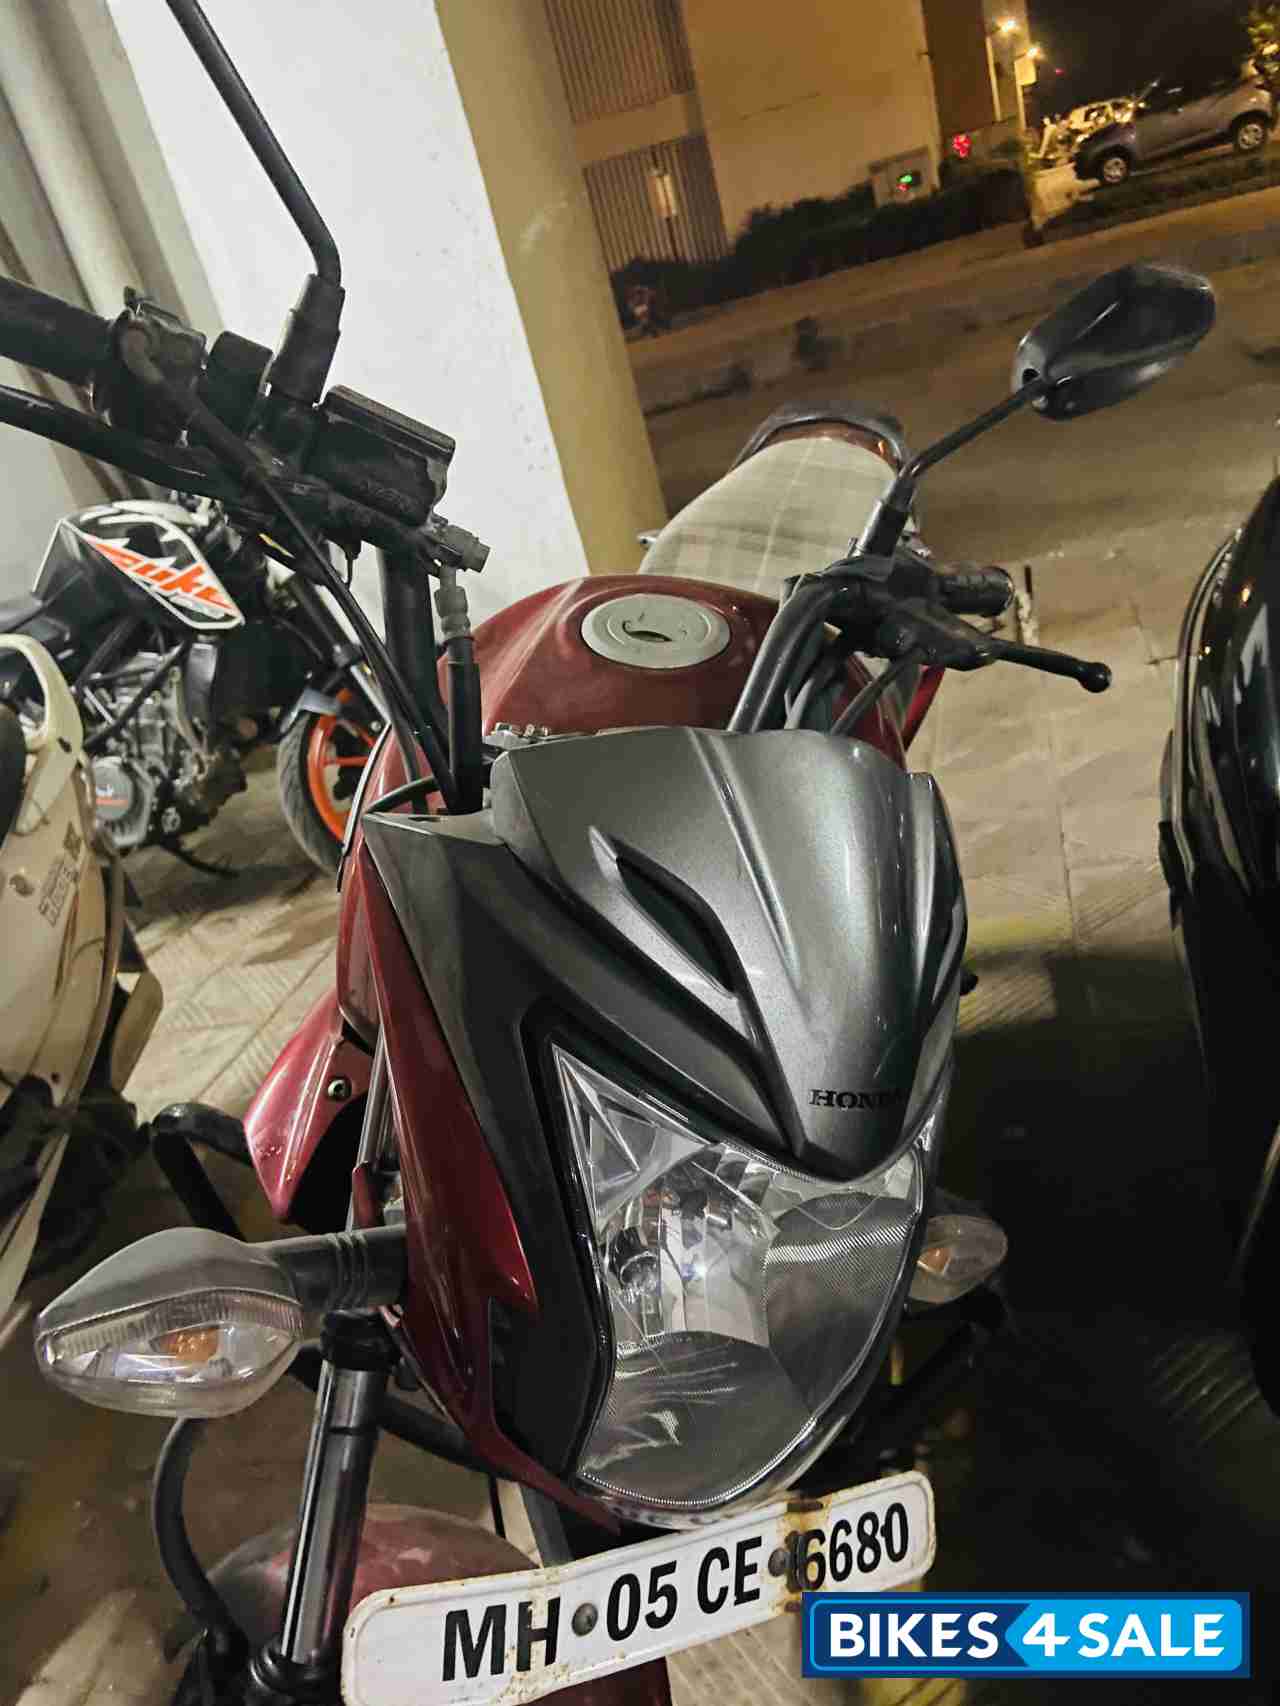 Red Honda CB Trigger